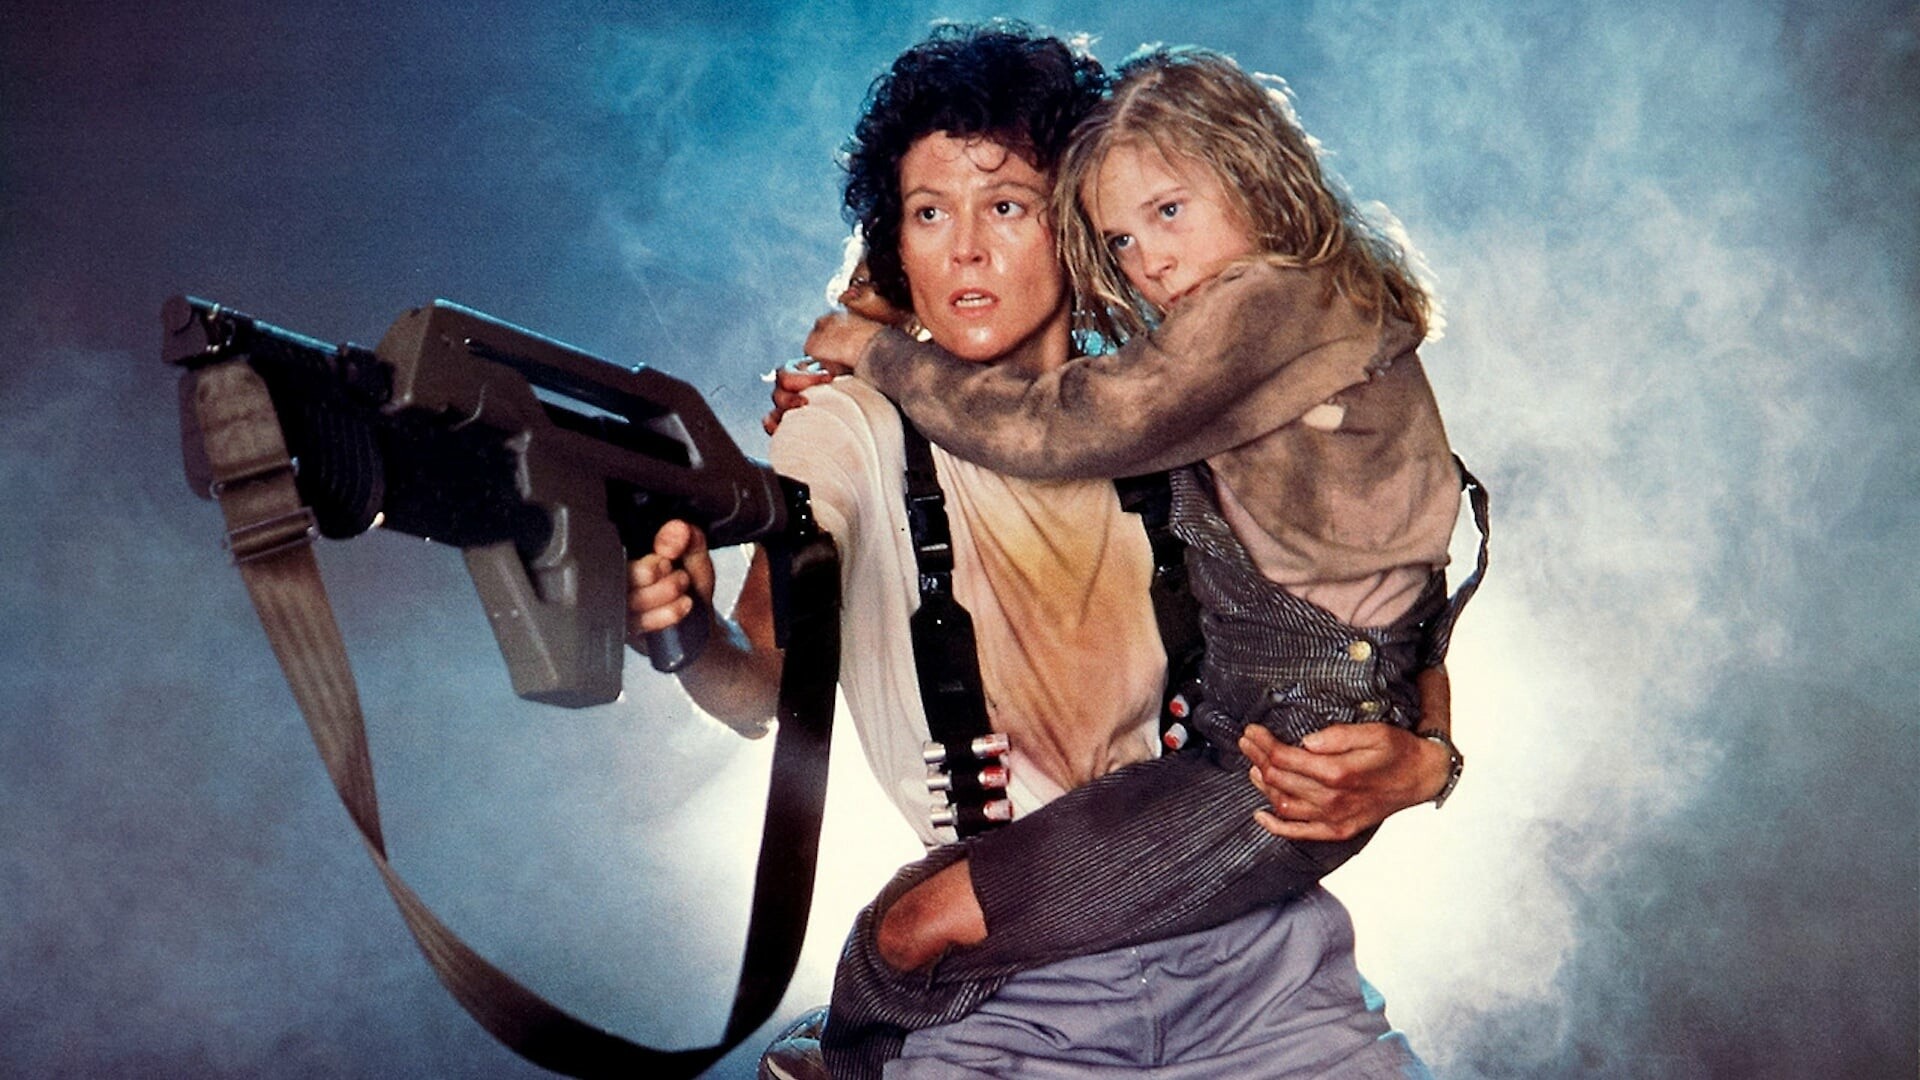 Alien (Movie): Sigourney Weaver as Ellen Ripley, Carrie Henn as Rebecca "Newt" Jorden. 1920x1080 Full HD Background.